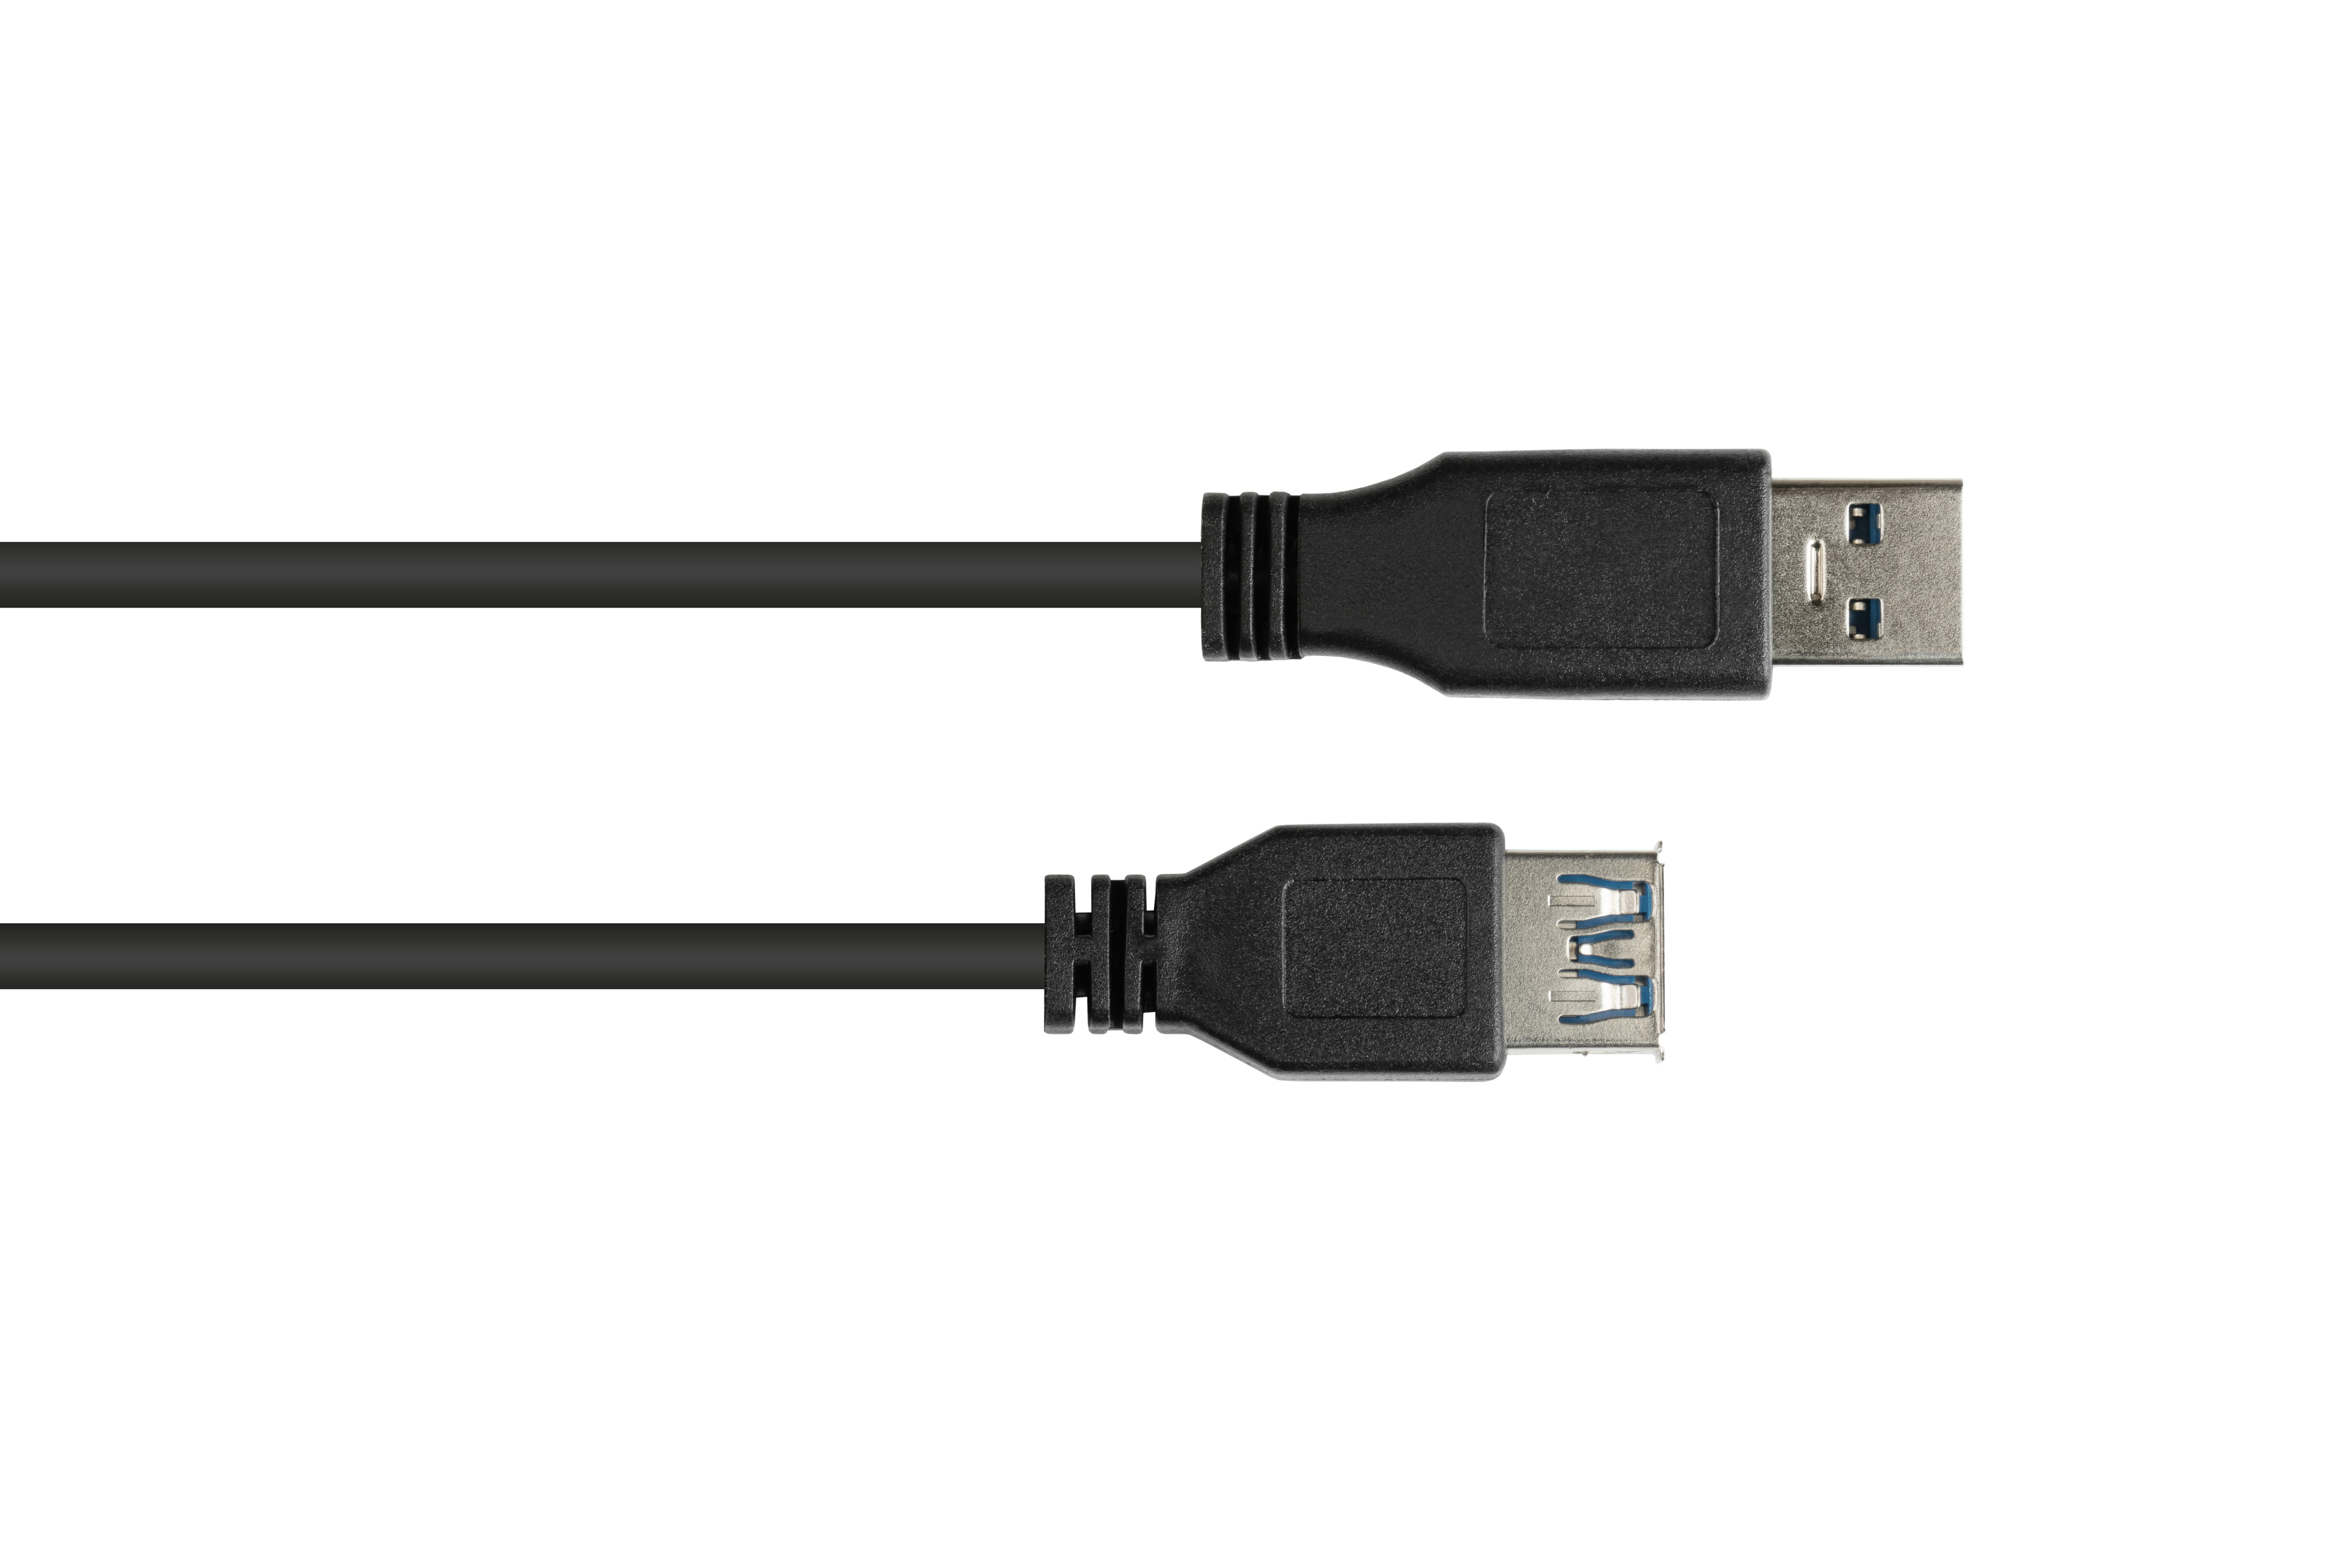 GOOD CONNECTIONS USB 3.0 Stecker A, Buchse Verlängerungskabel an schwarz A